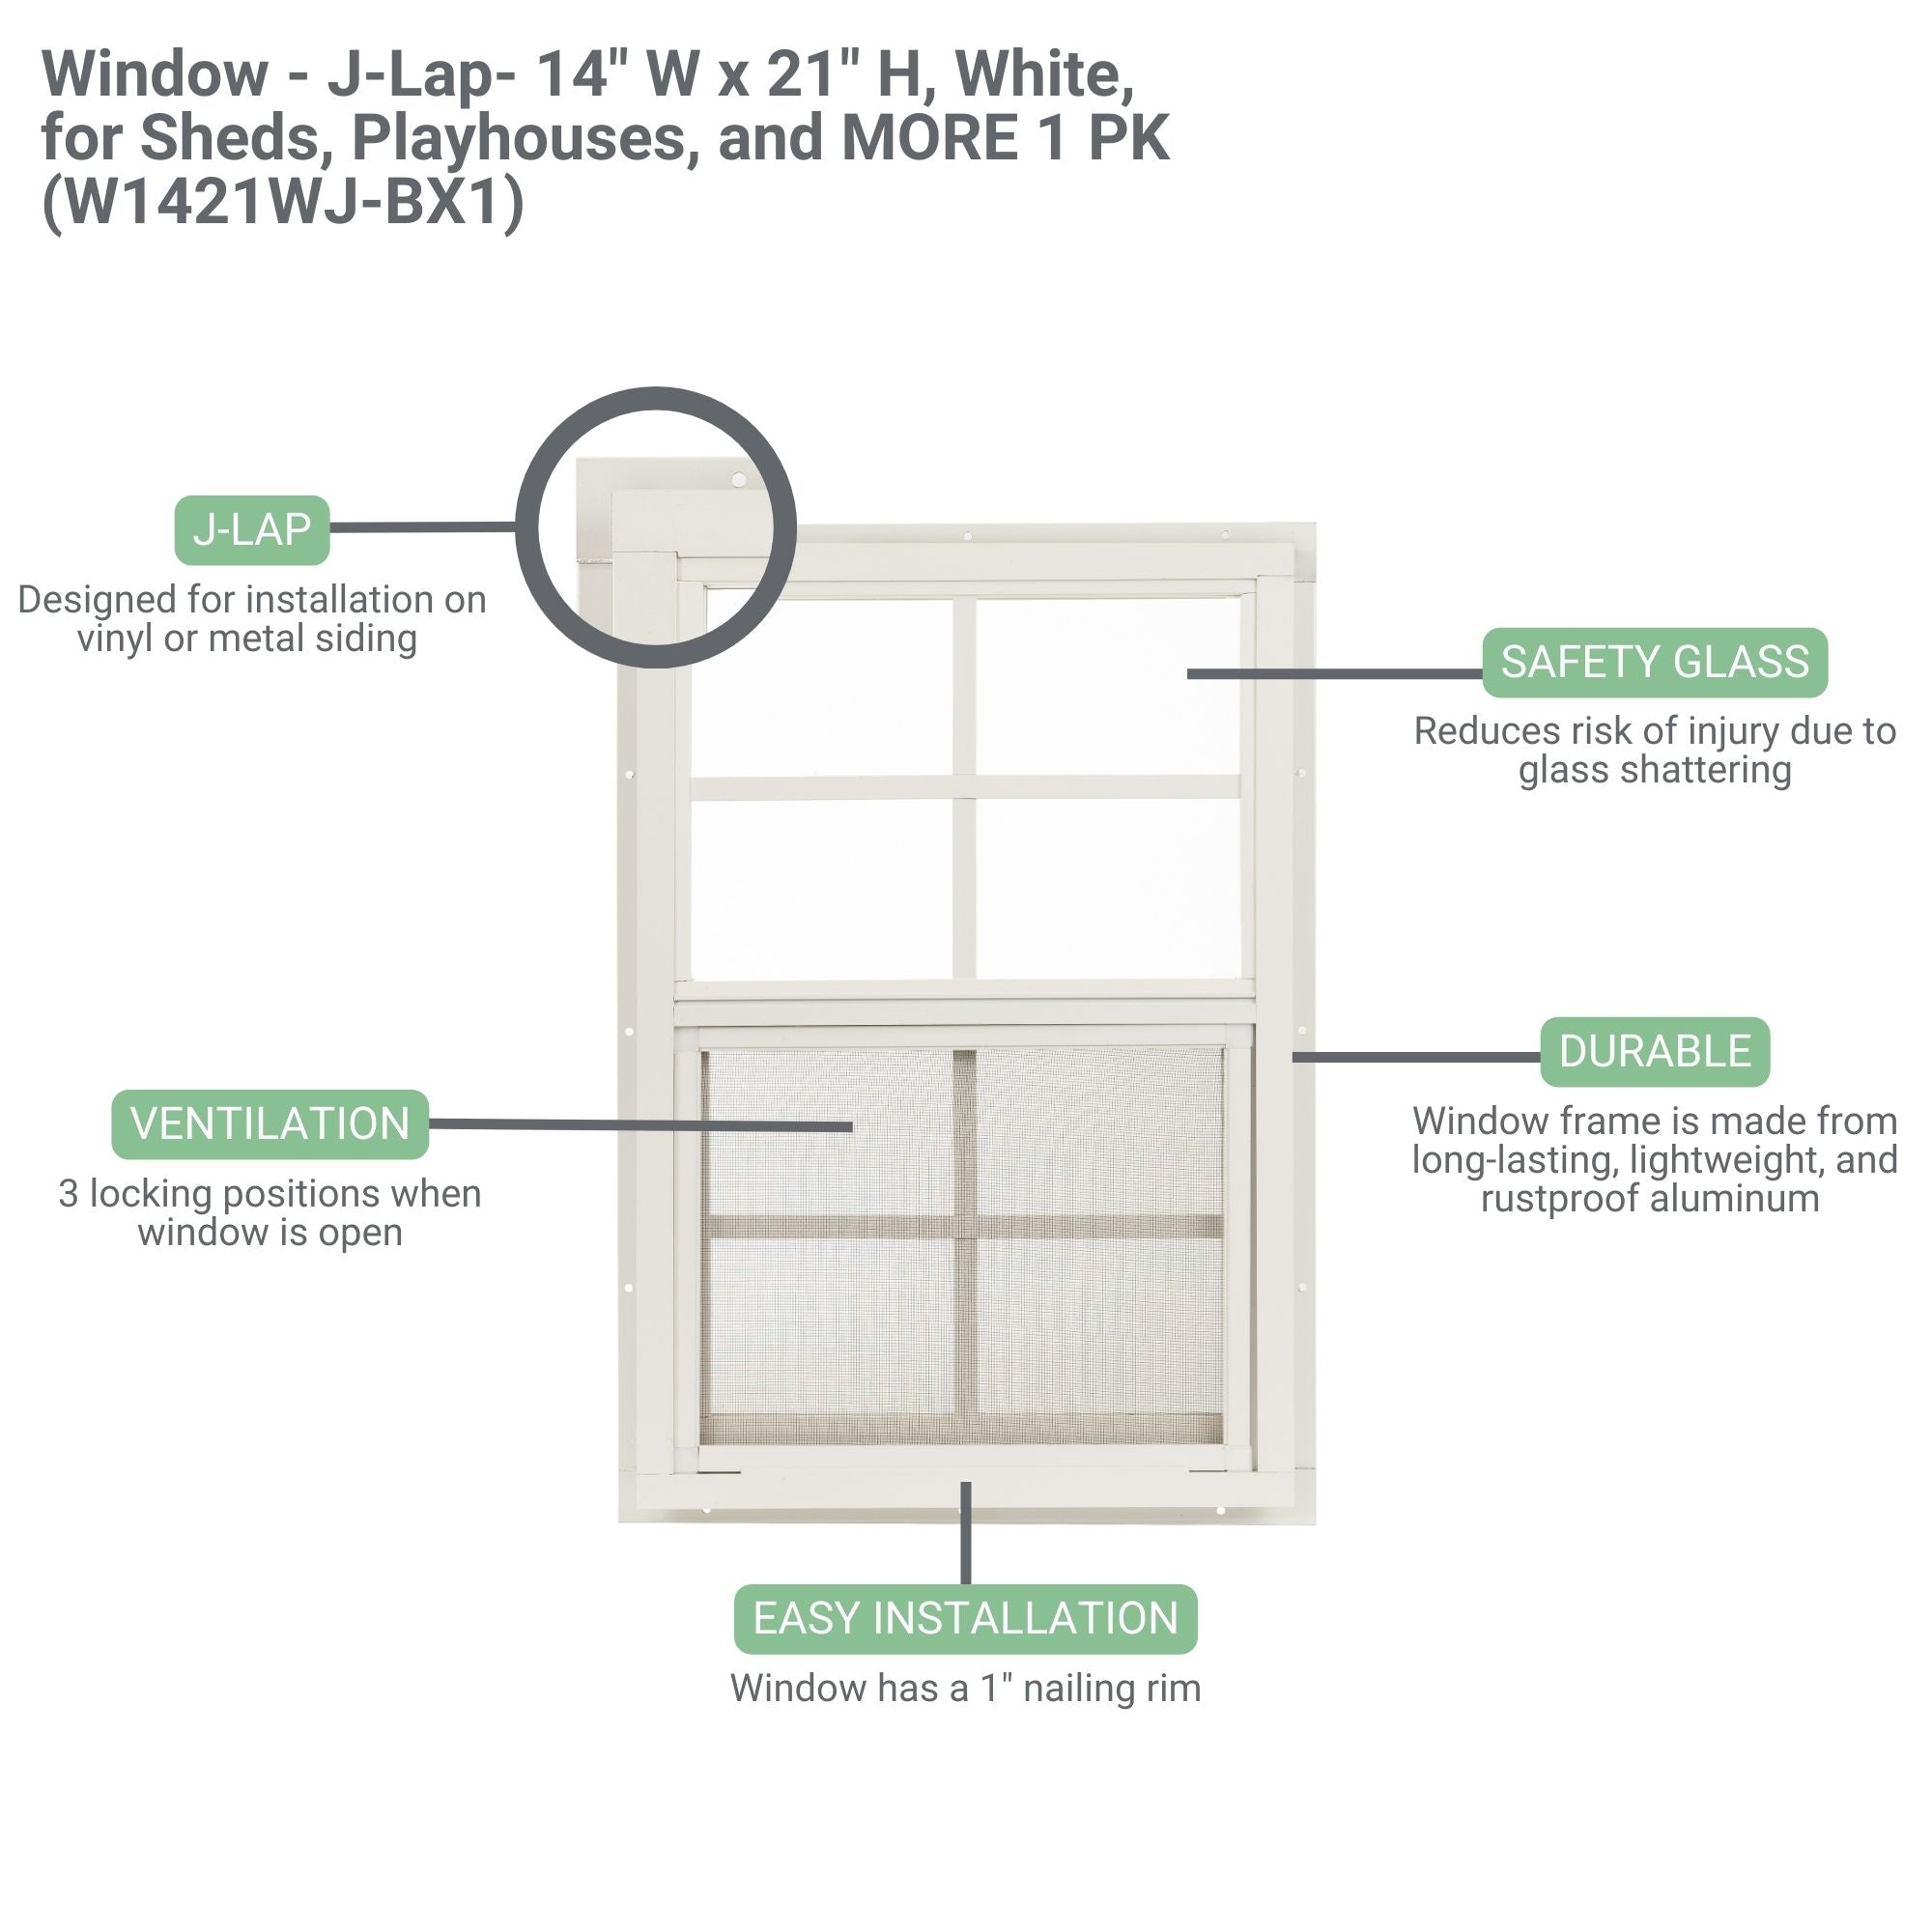 14" W x 21" H J-Lap Shed Window, 1 PK